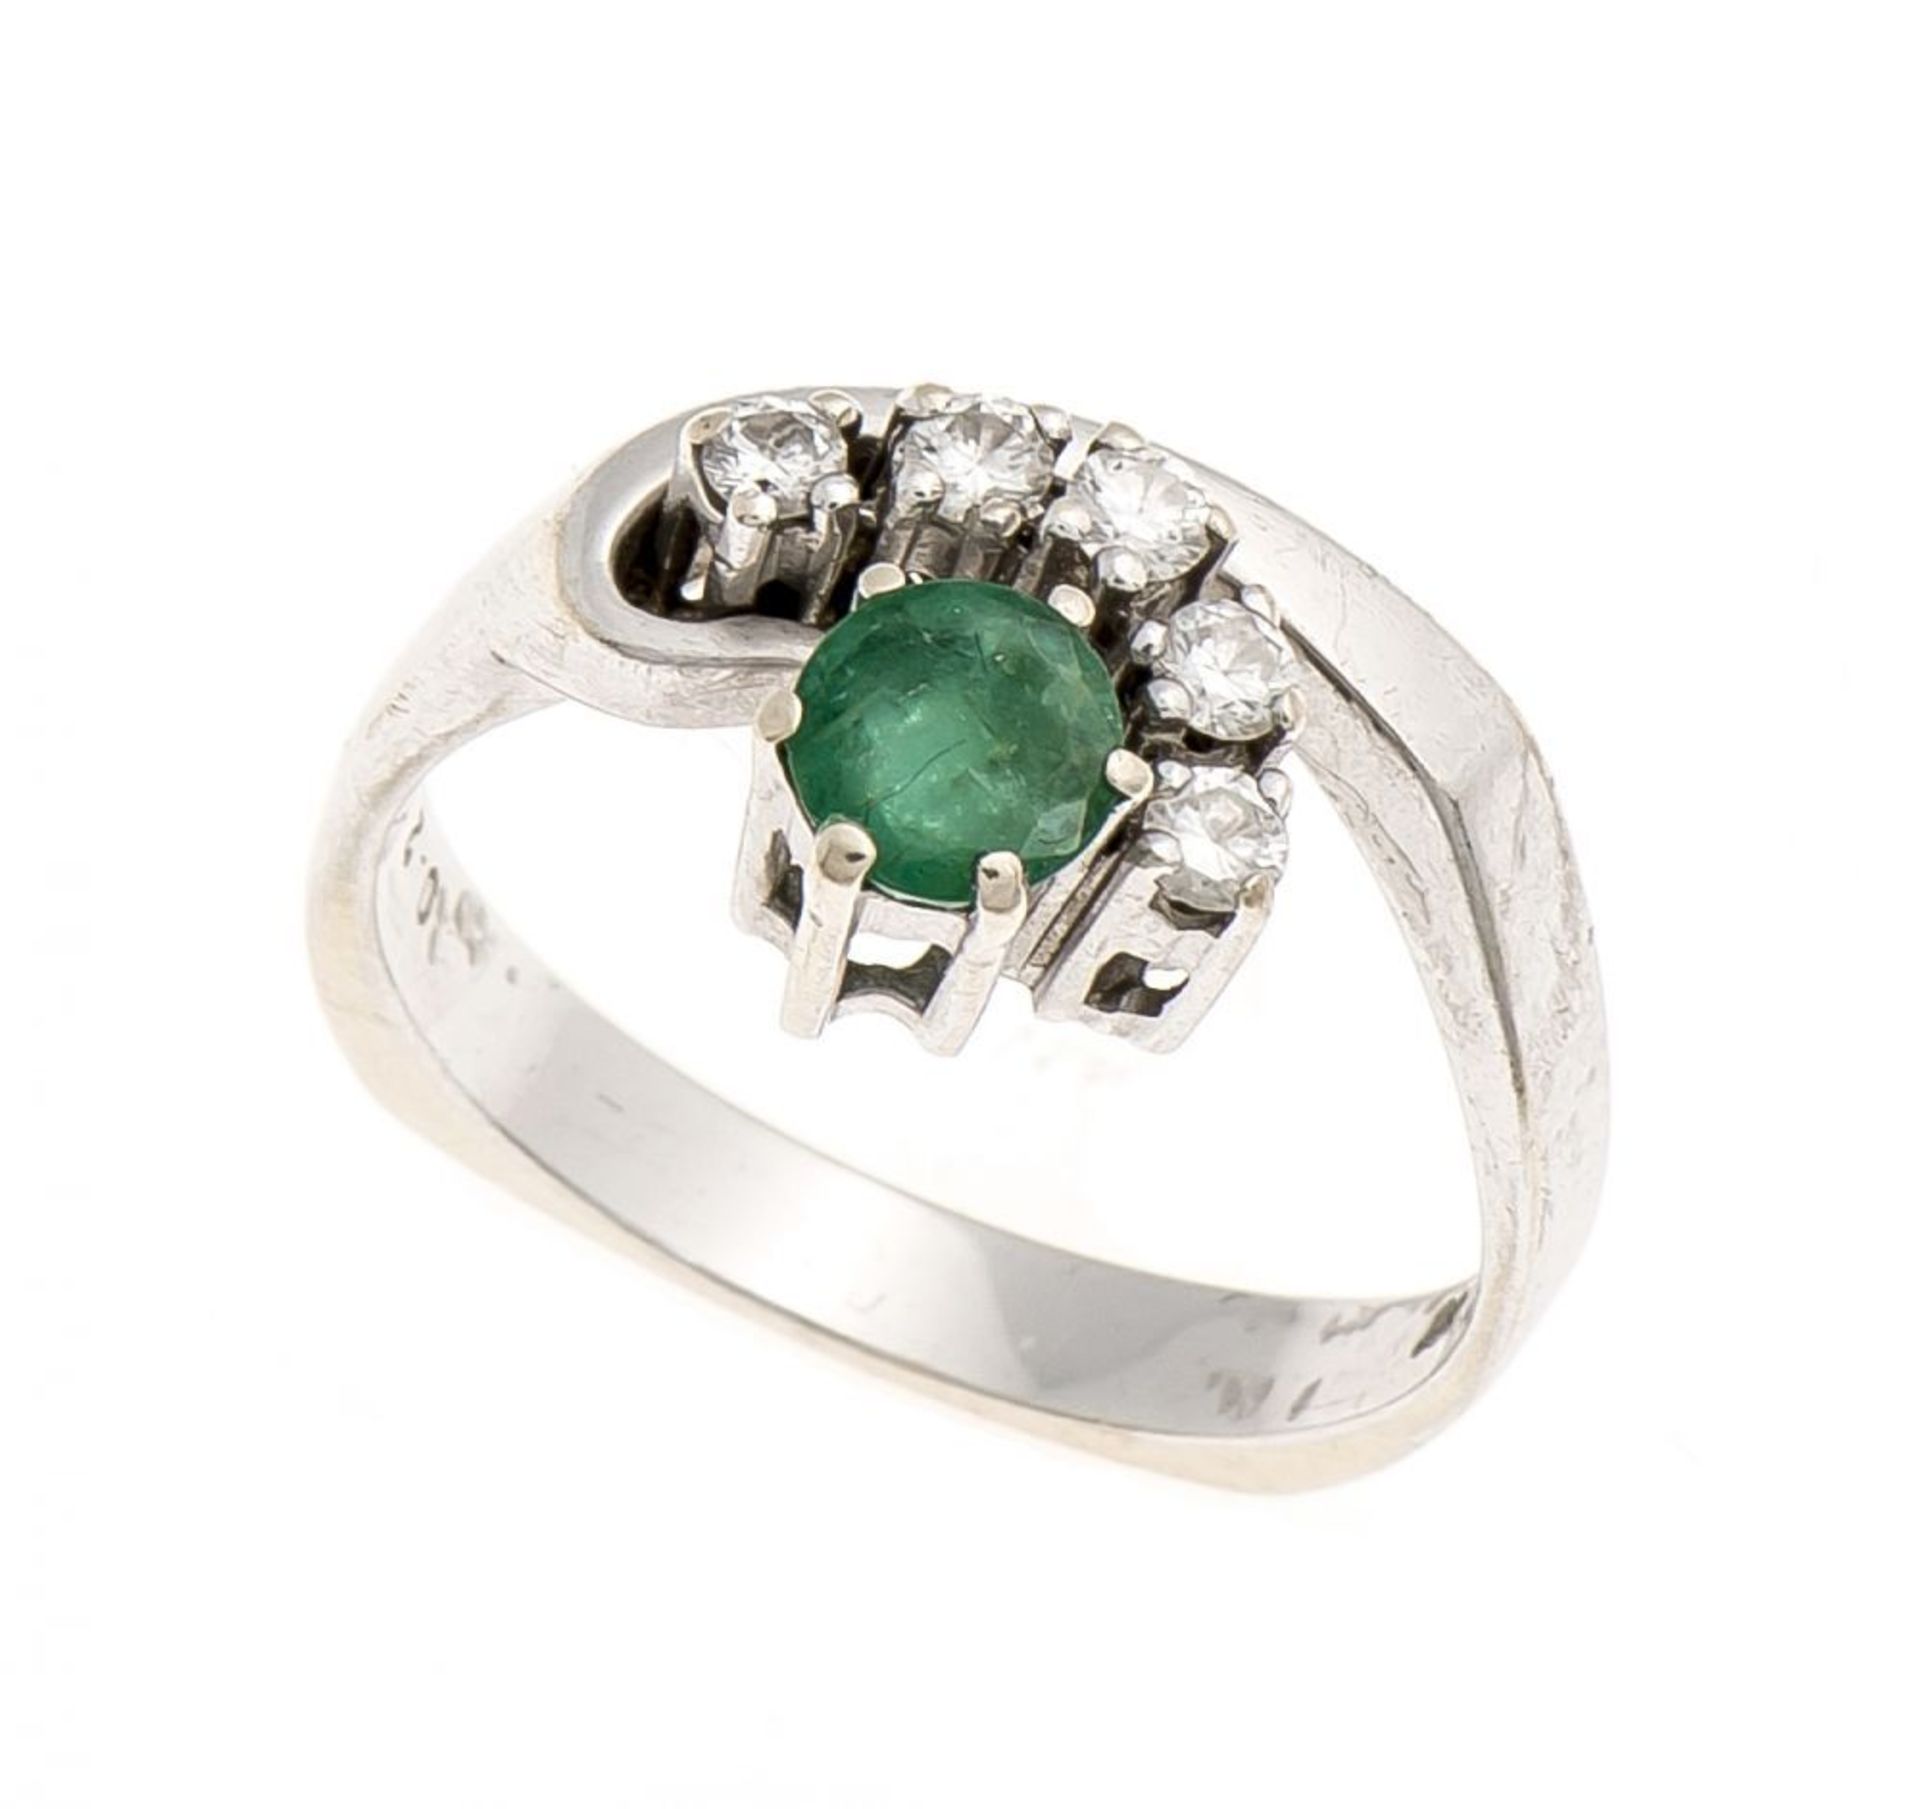 Smaragd-Brillant-Ring WG 750/000 mit einem rund fac. Smaragd 0,46 ct in guter Farbe und 5